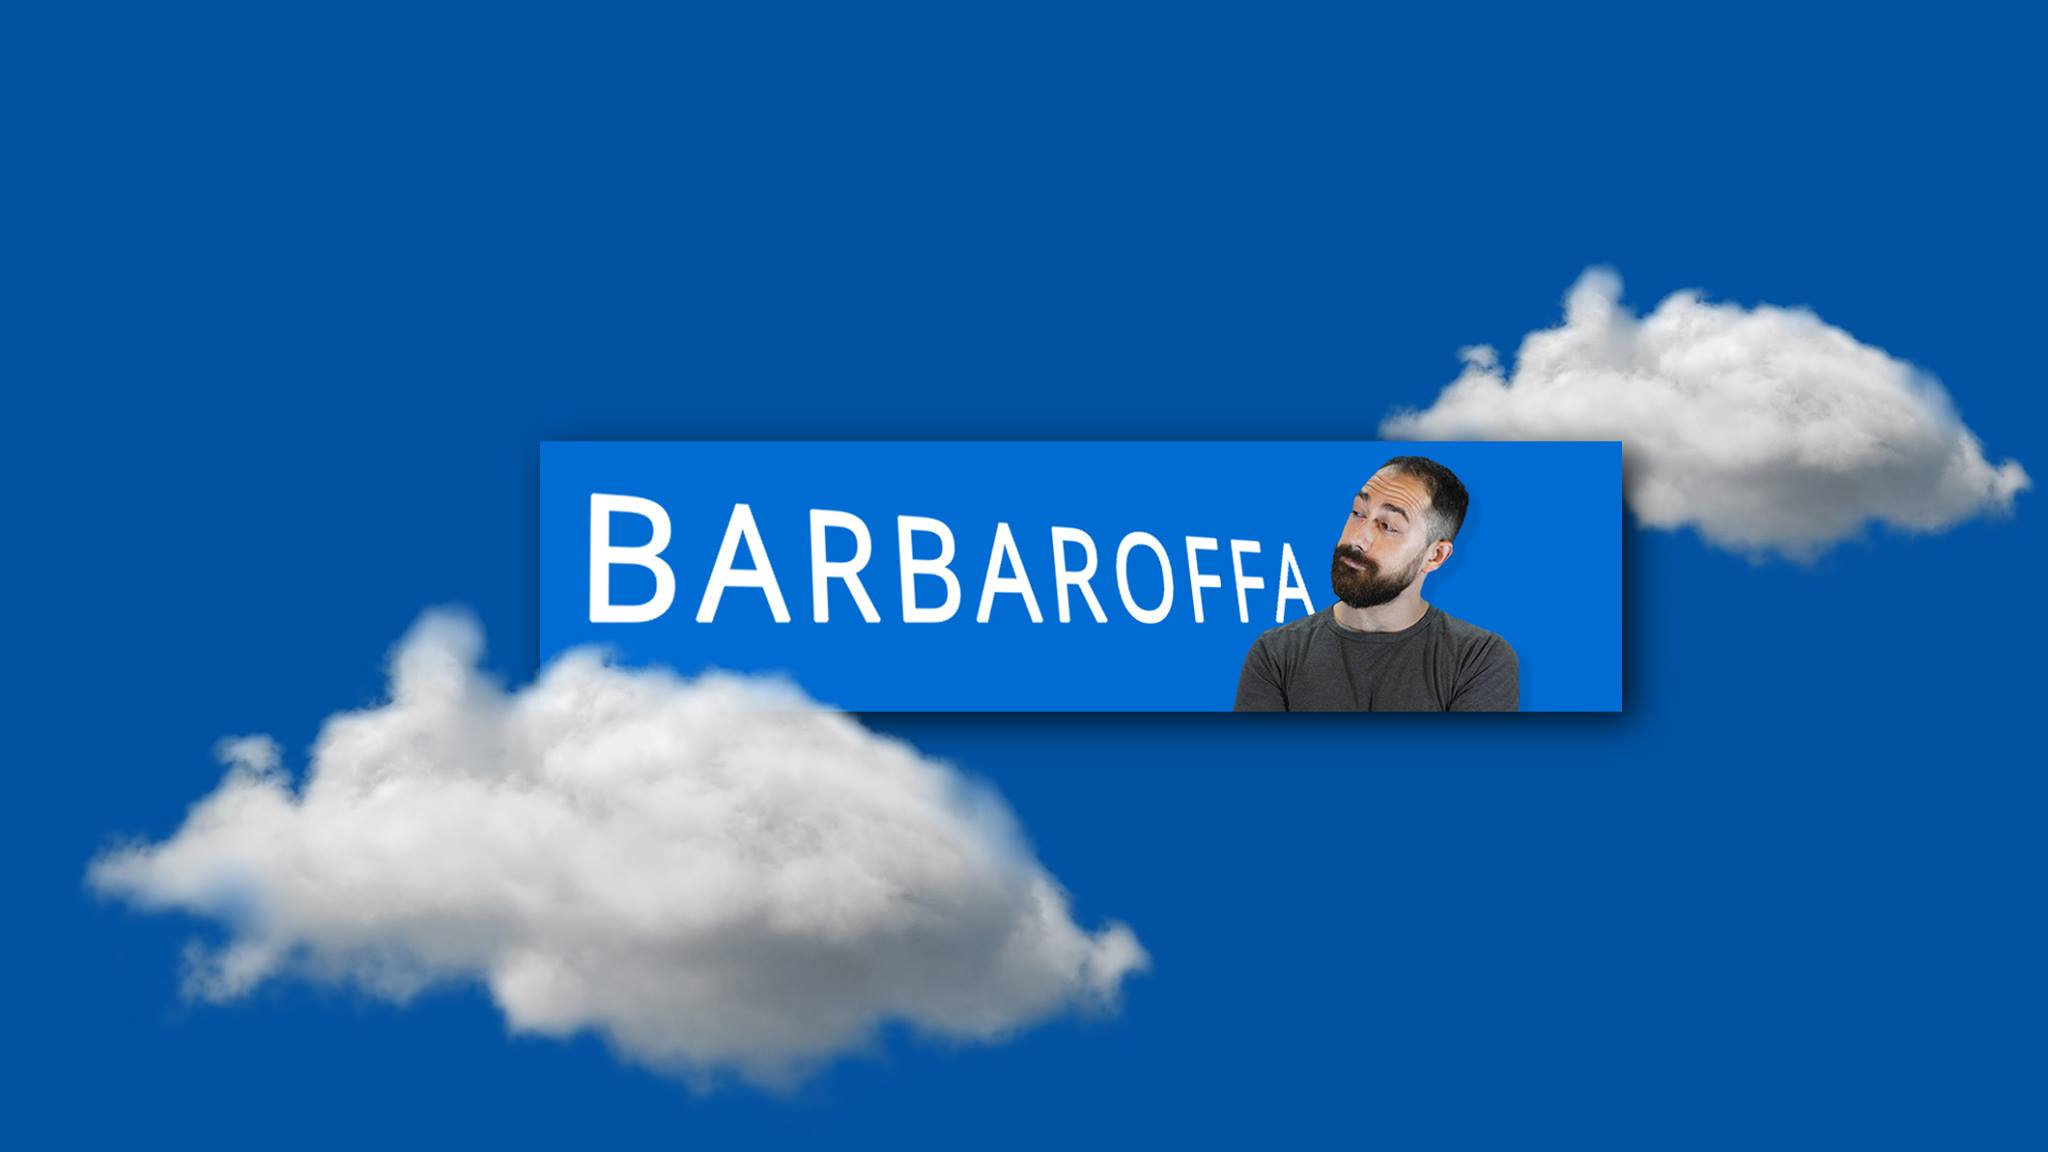 Barbaroffa